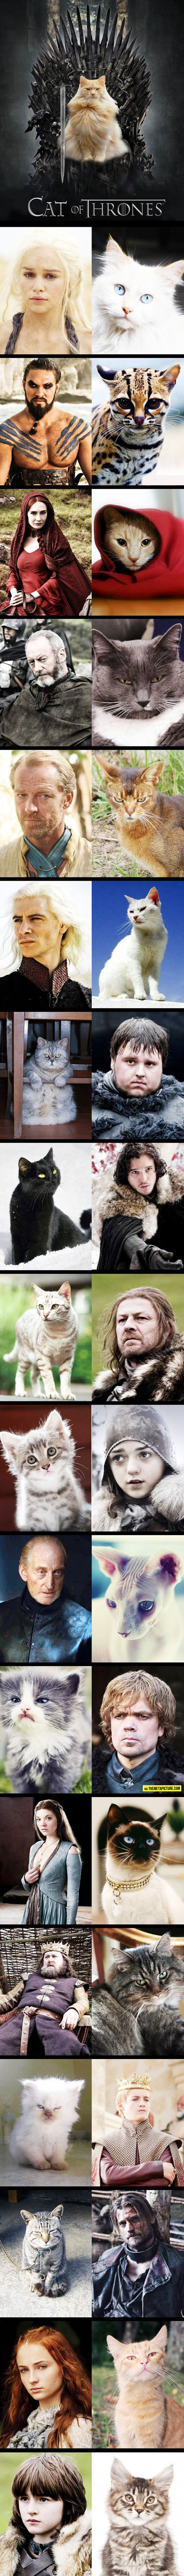 The Cat Of Thrones